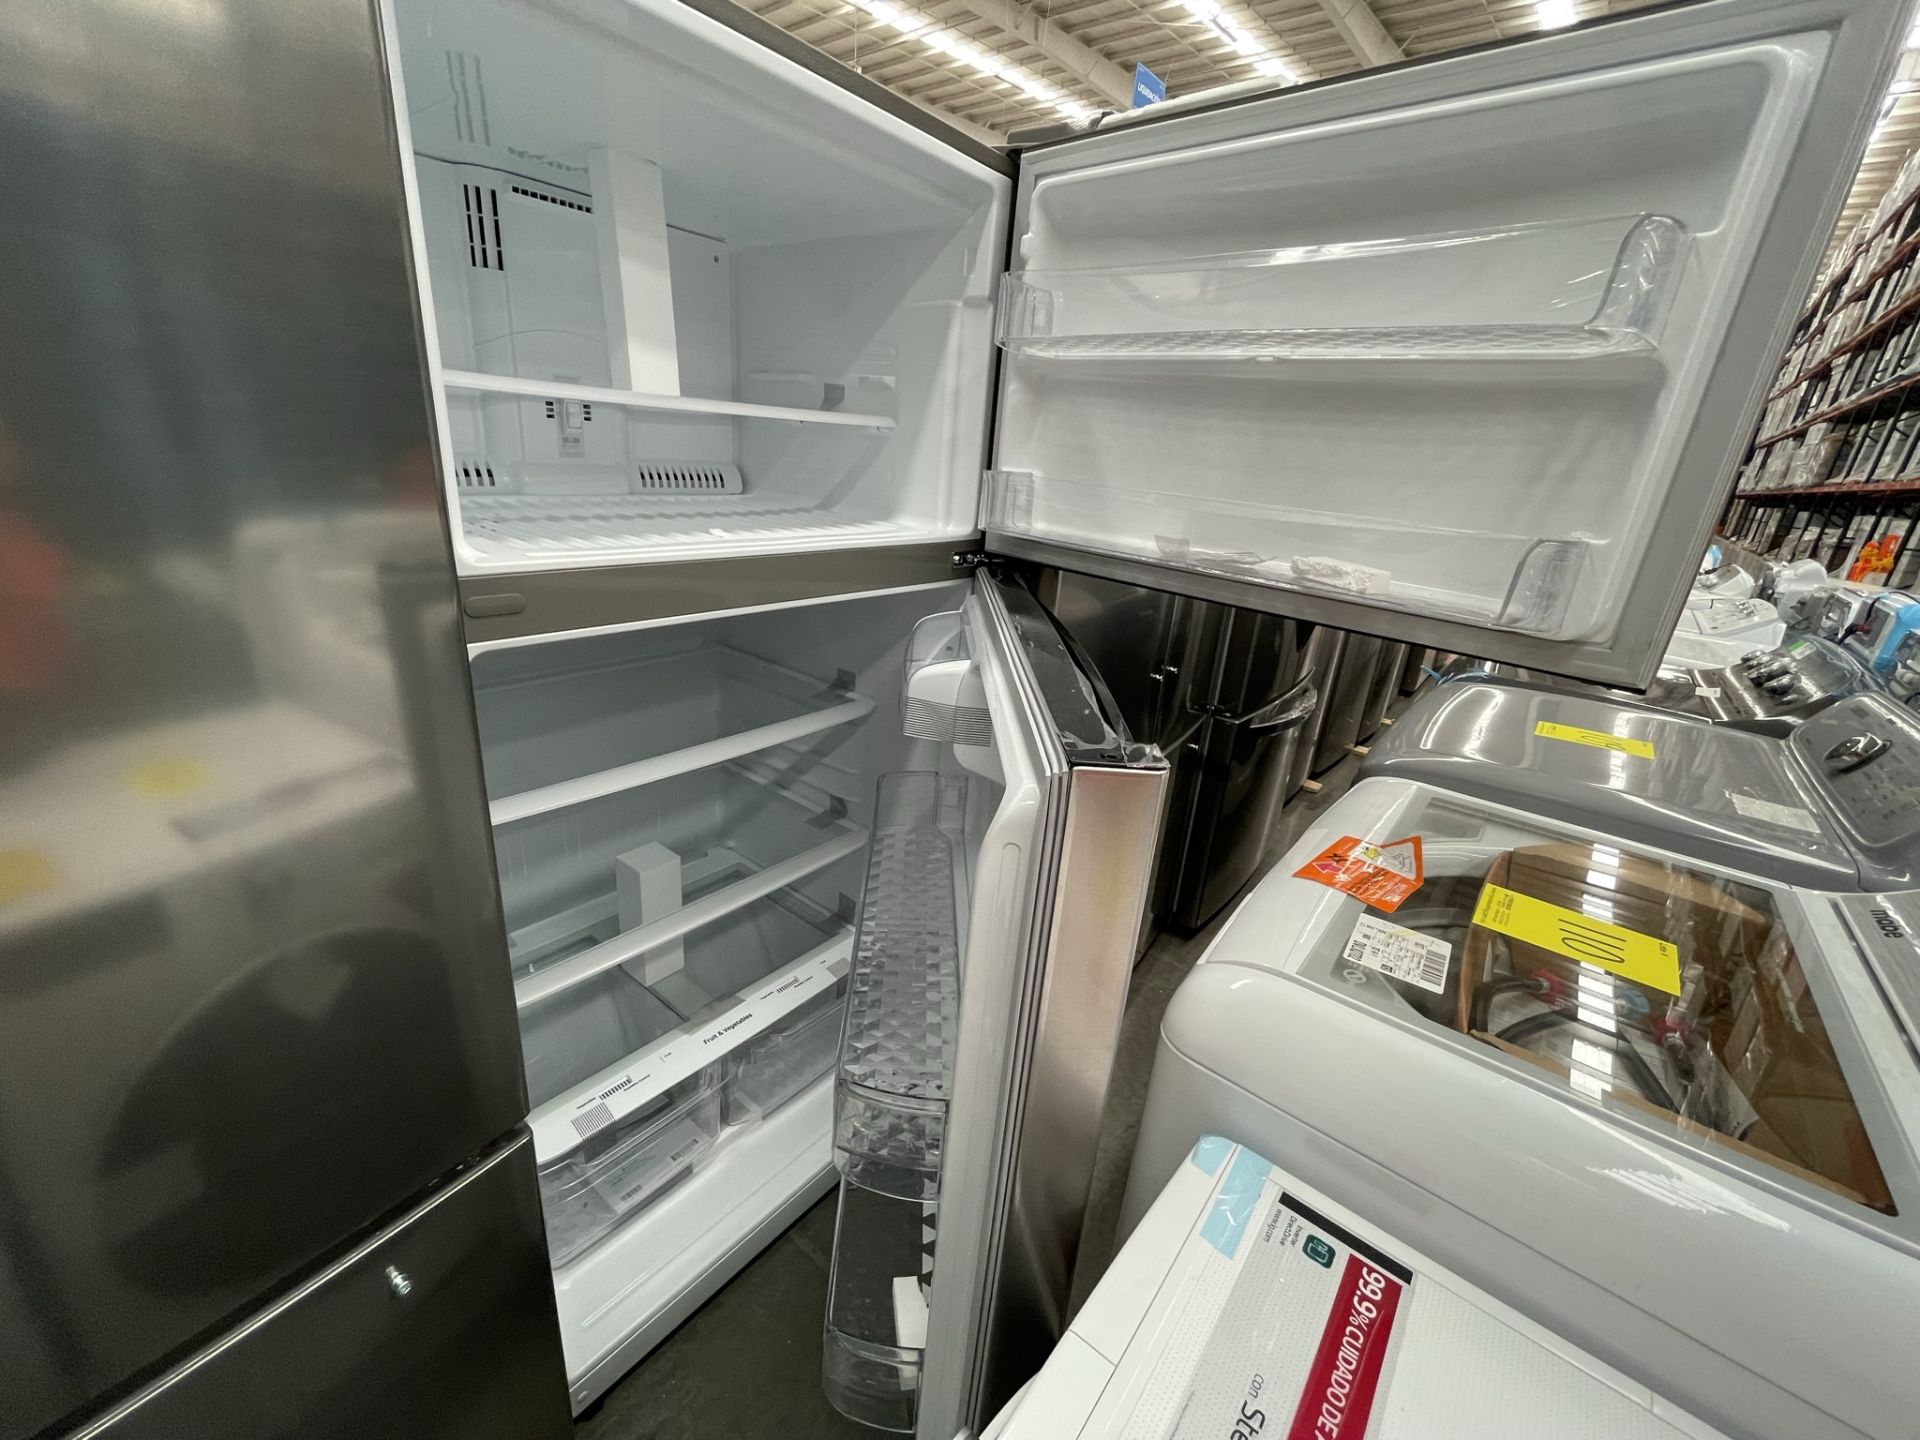 (EQUIPO NUEVO) 1 Refrigerador Marca LG, Modelo GT24BS, Serie V1C601, Color GRIS, LB-619781; (Nuevo, - Image 8 of 10